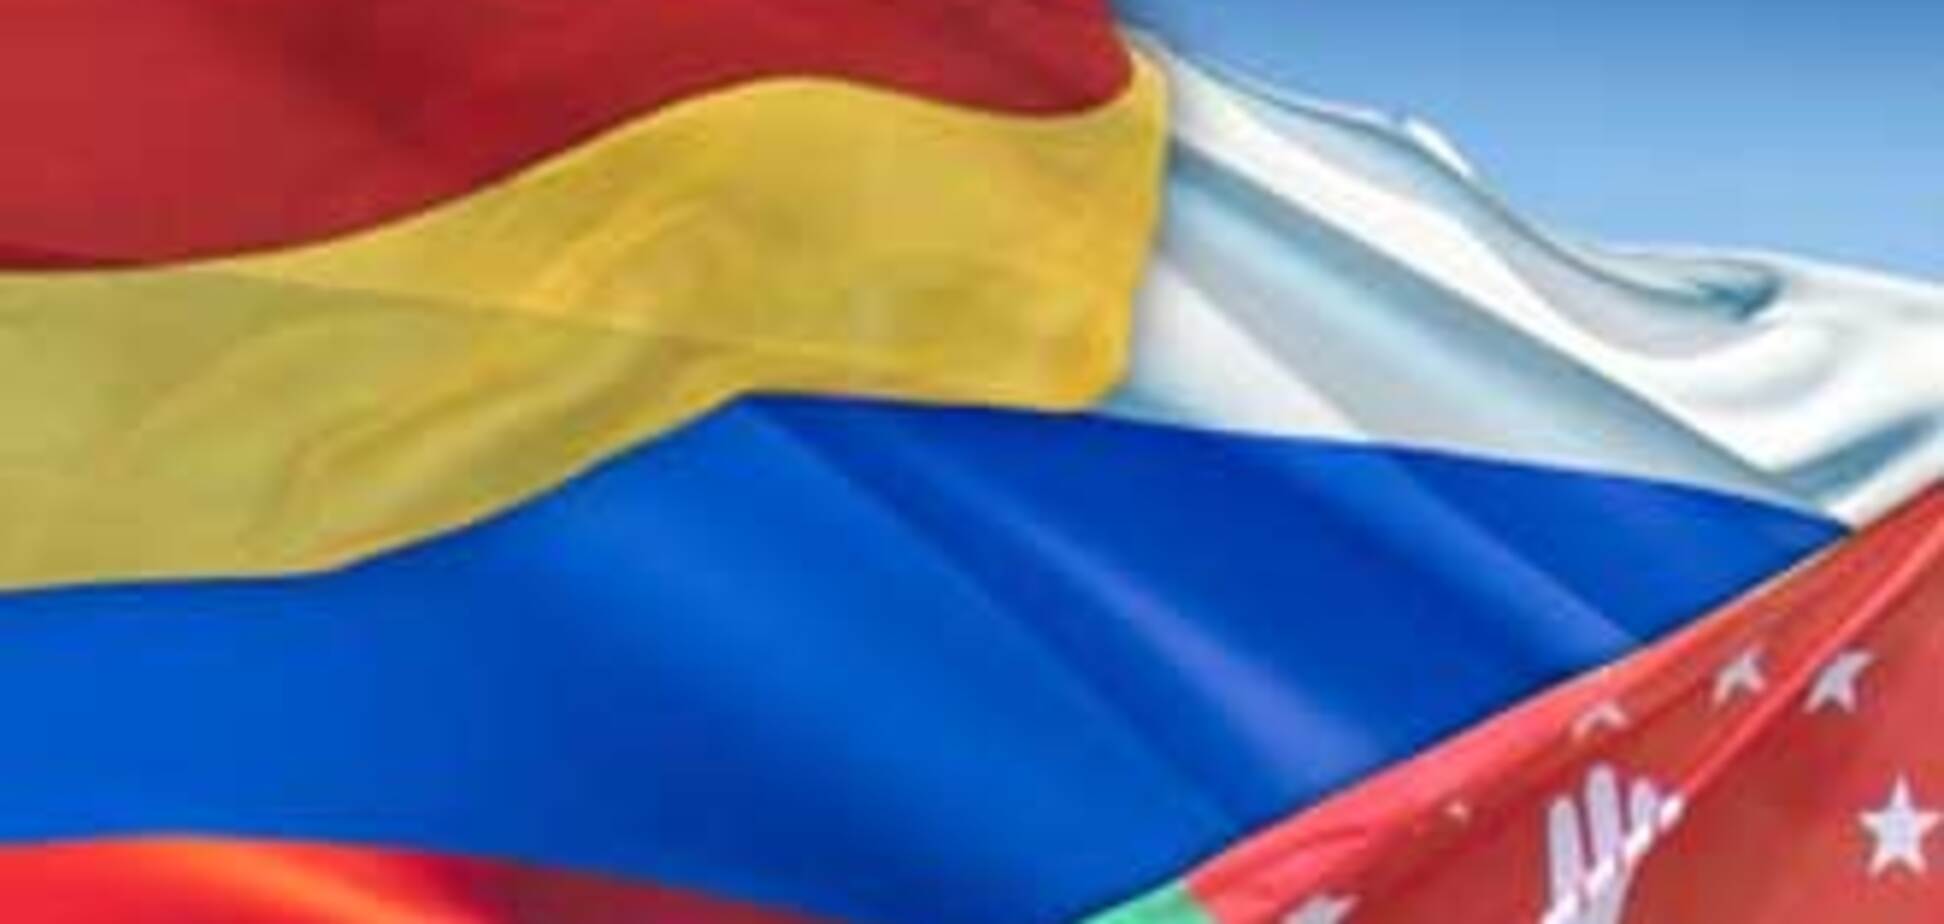 РФ подписала договоры о дружбе с Абхазией и Южной Осетией